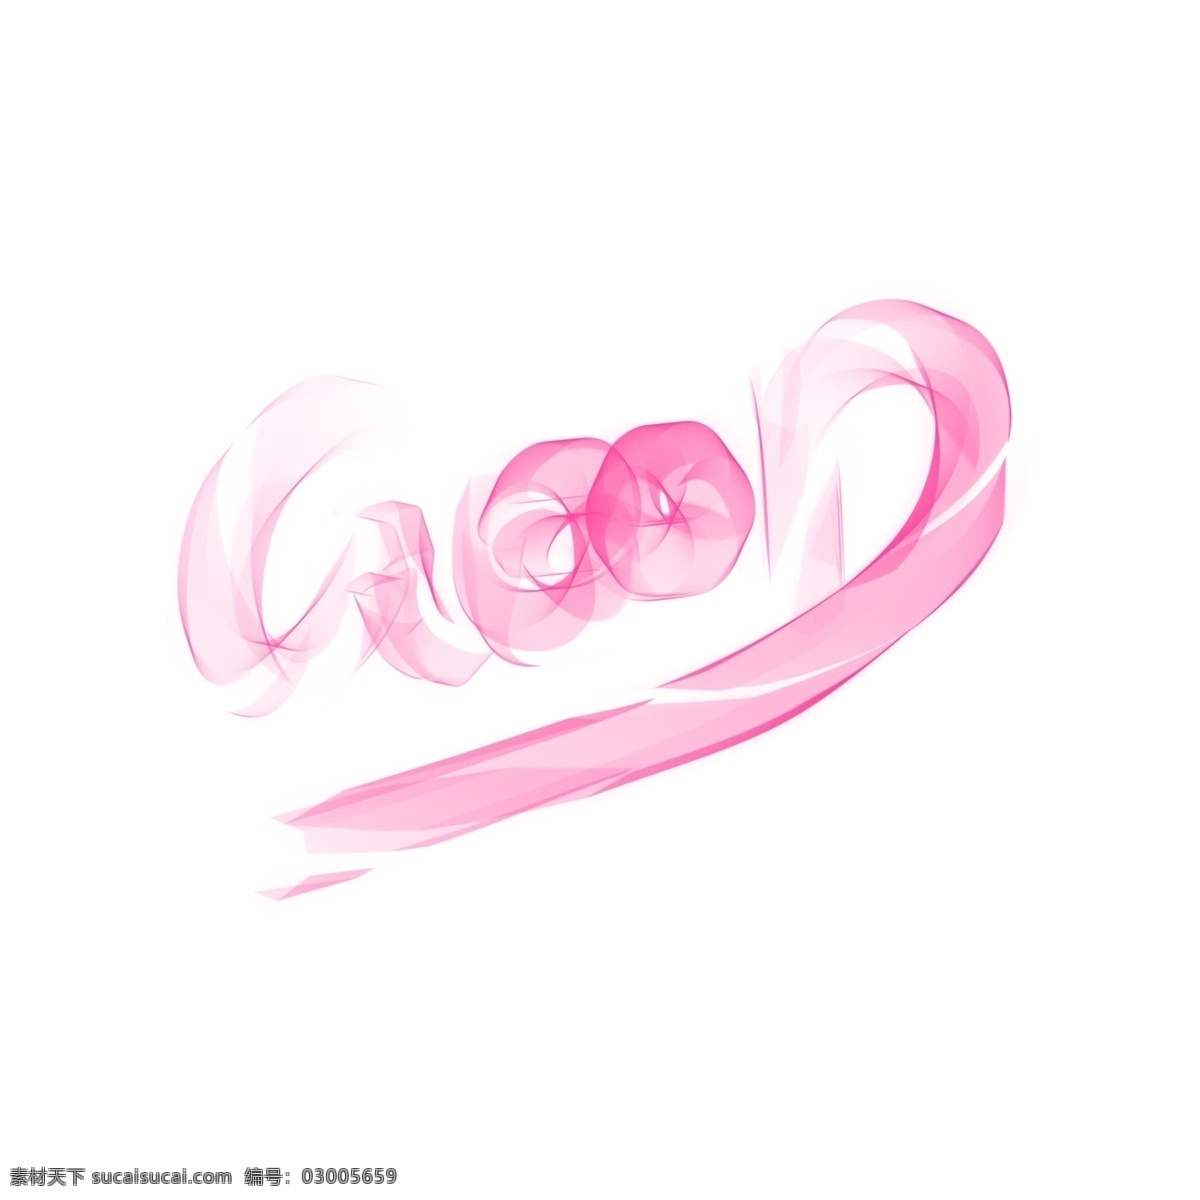 抽象 线条 粉色 good 曲线 手绘 简约 平面设计 装饰 可爱 字体